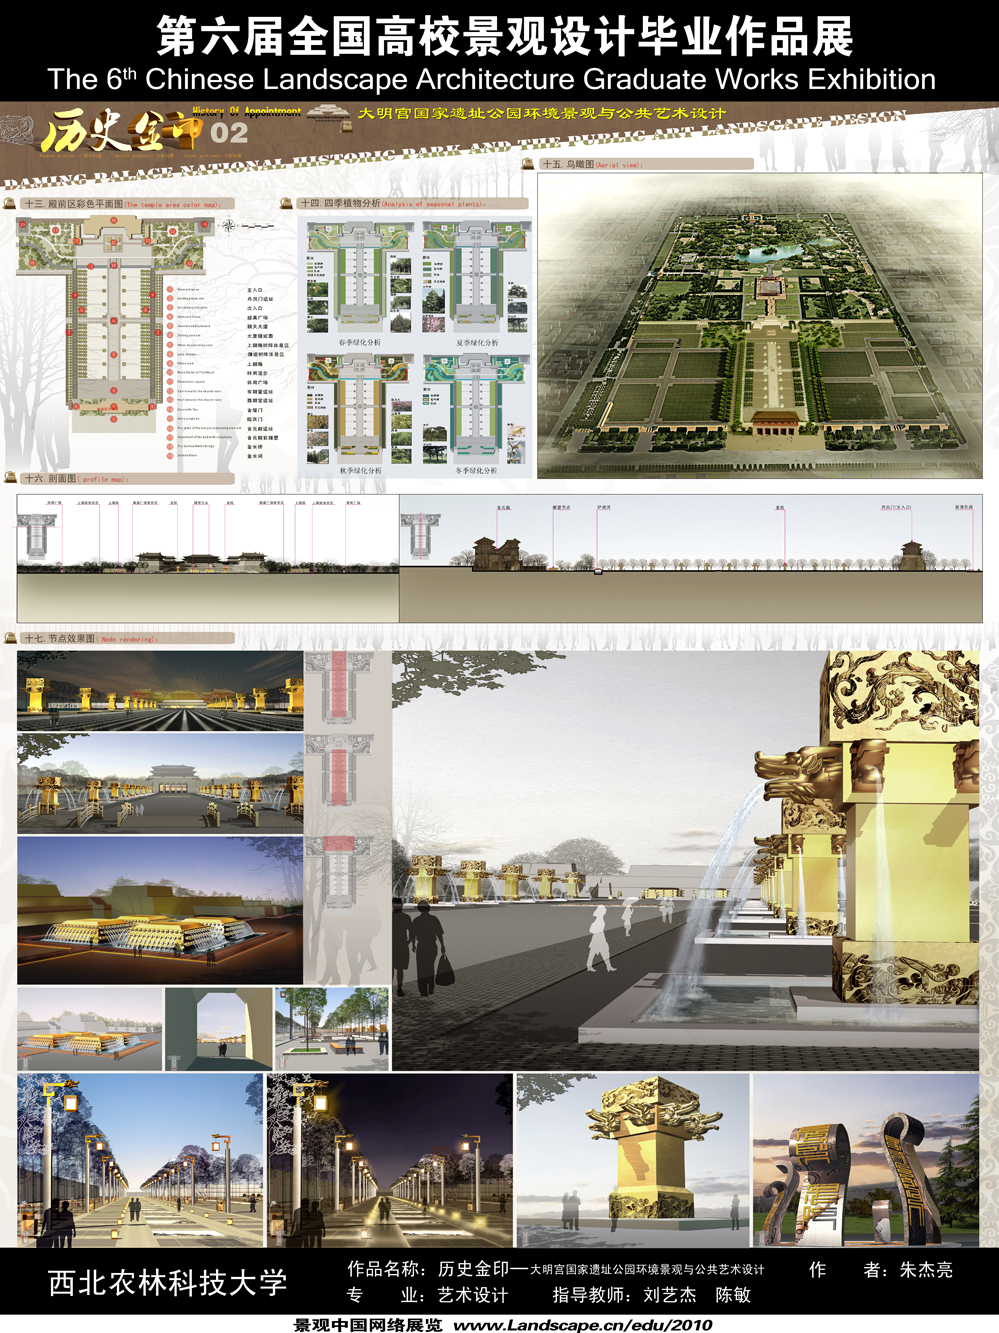 历史金印—大明宫国家遗址公园环境景观与公共艺术设计-2